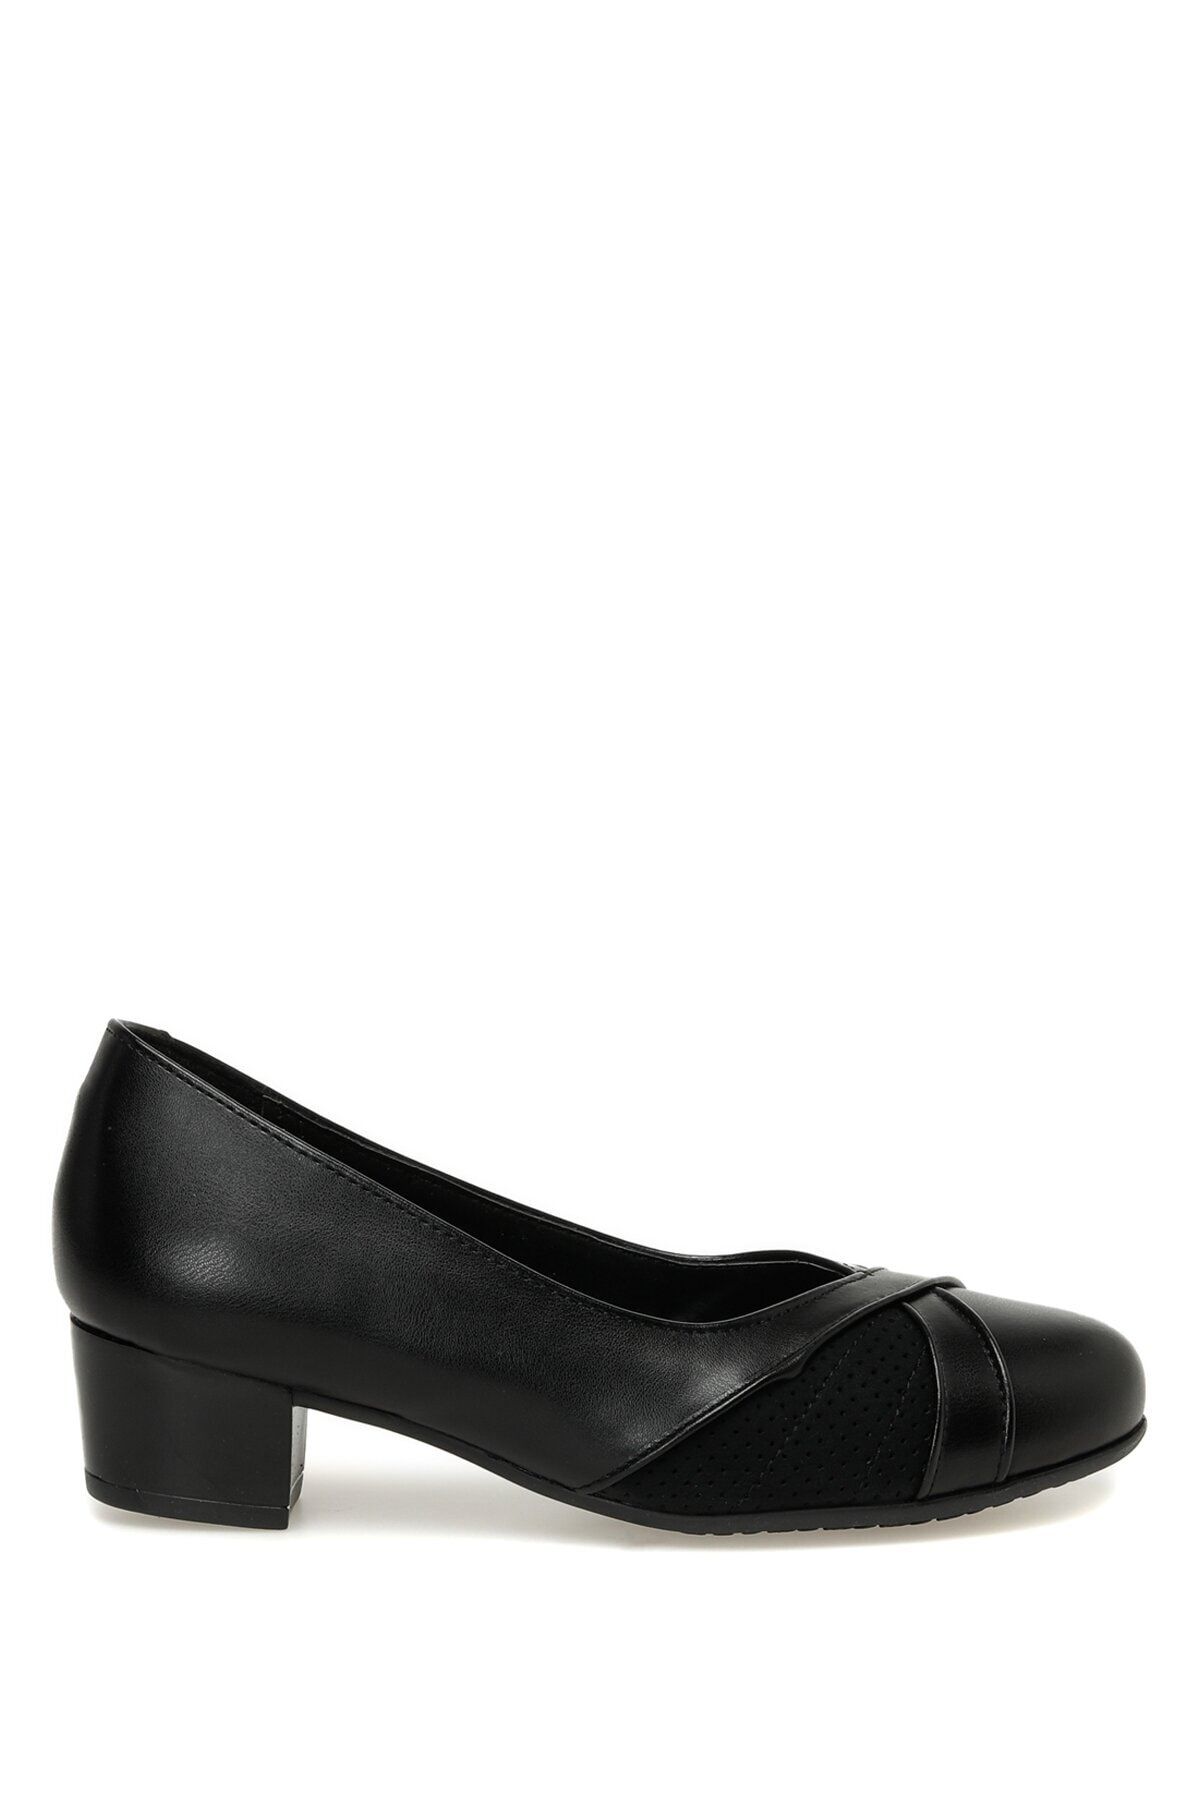 Polaris 104070.z3fx Siyah Kadın Topuklu Ayakkabı